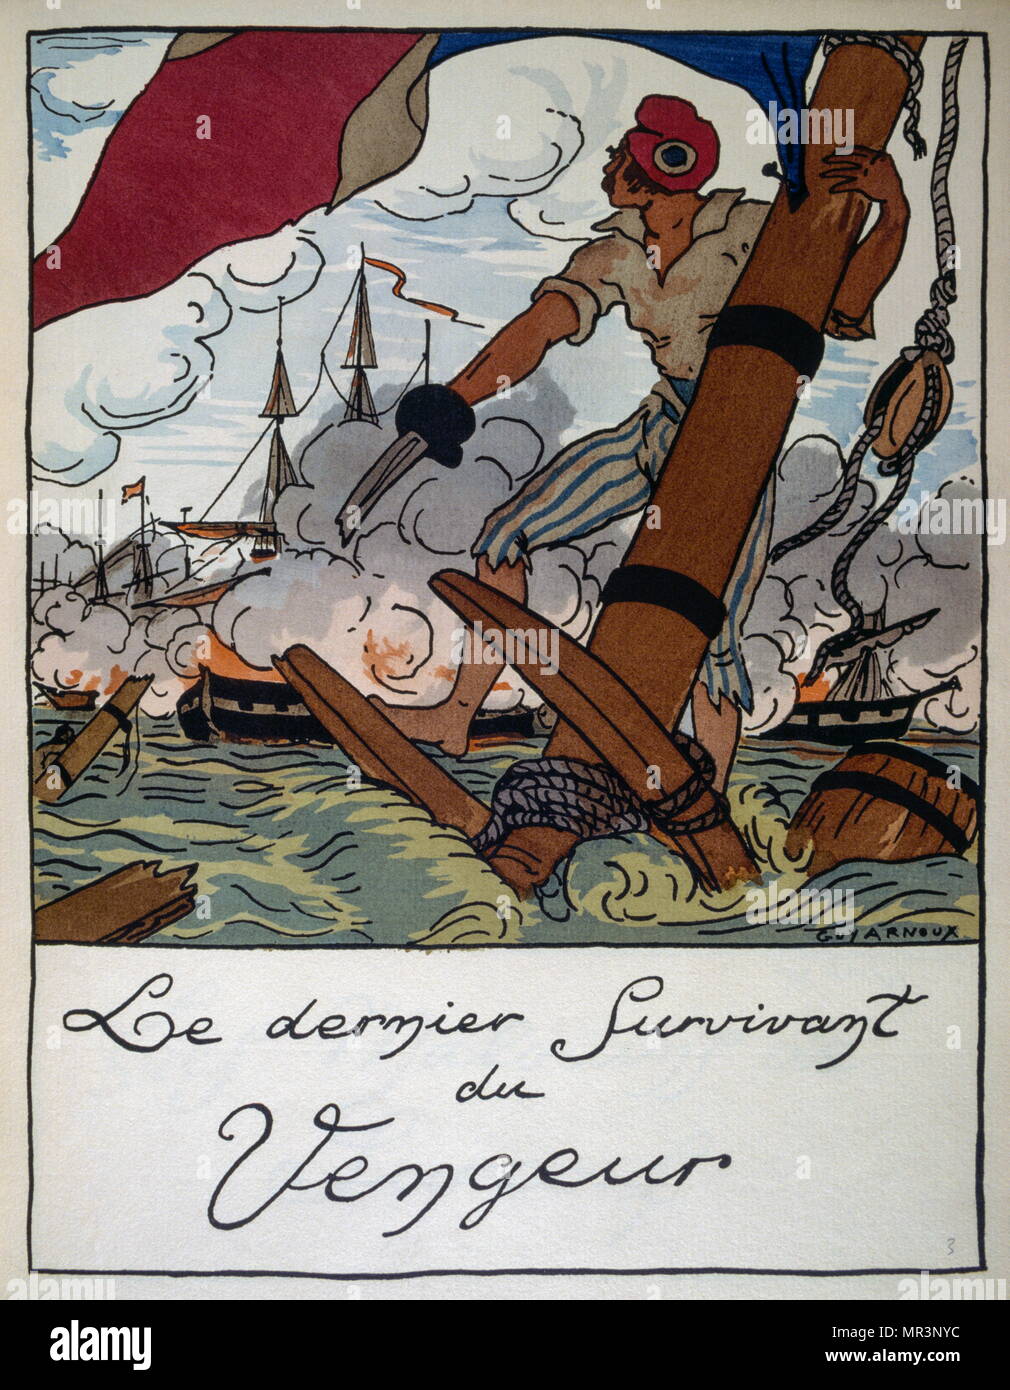 Naval illustration, by French illustrator, Guy Arnoux, (1886 - 1951). From  'Chansons du marin Français au temps de la marine en bois', (Songs of the  French sailor). Paris, Devambez, 1920 Stock Photo - Alamy